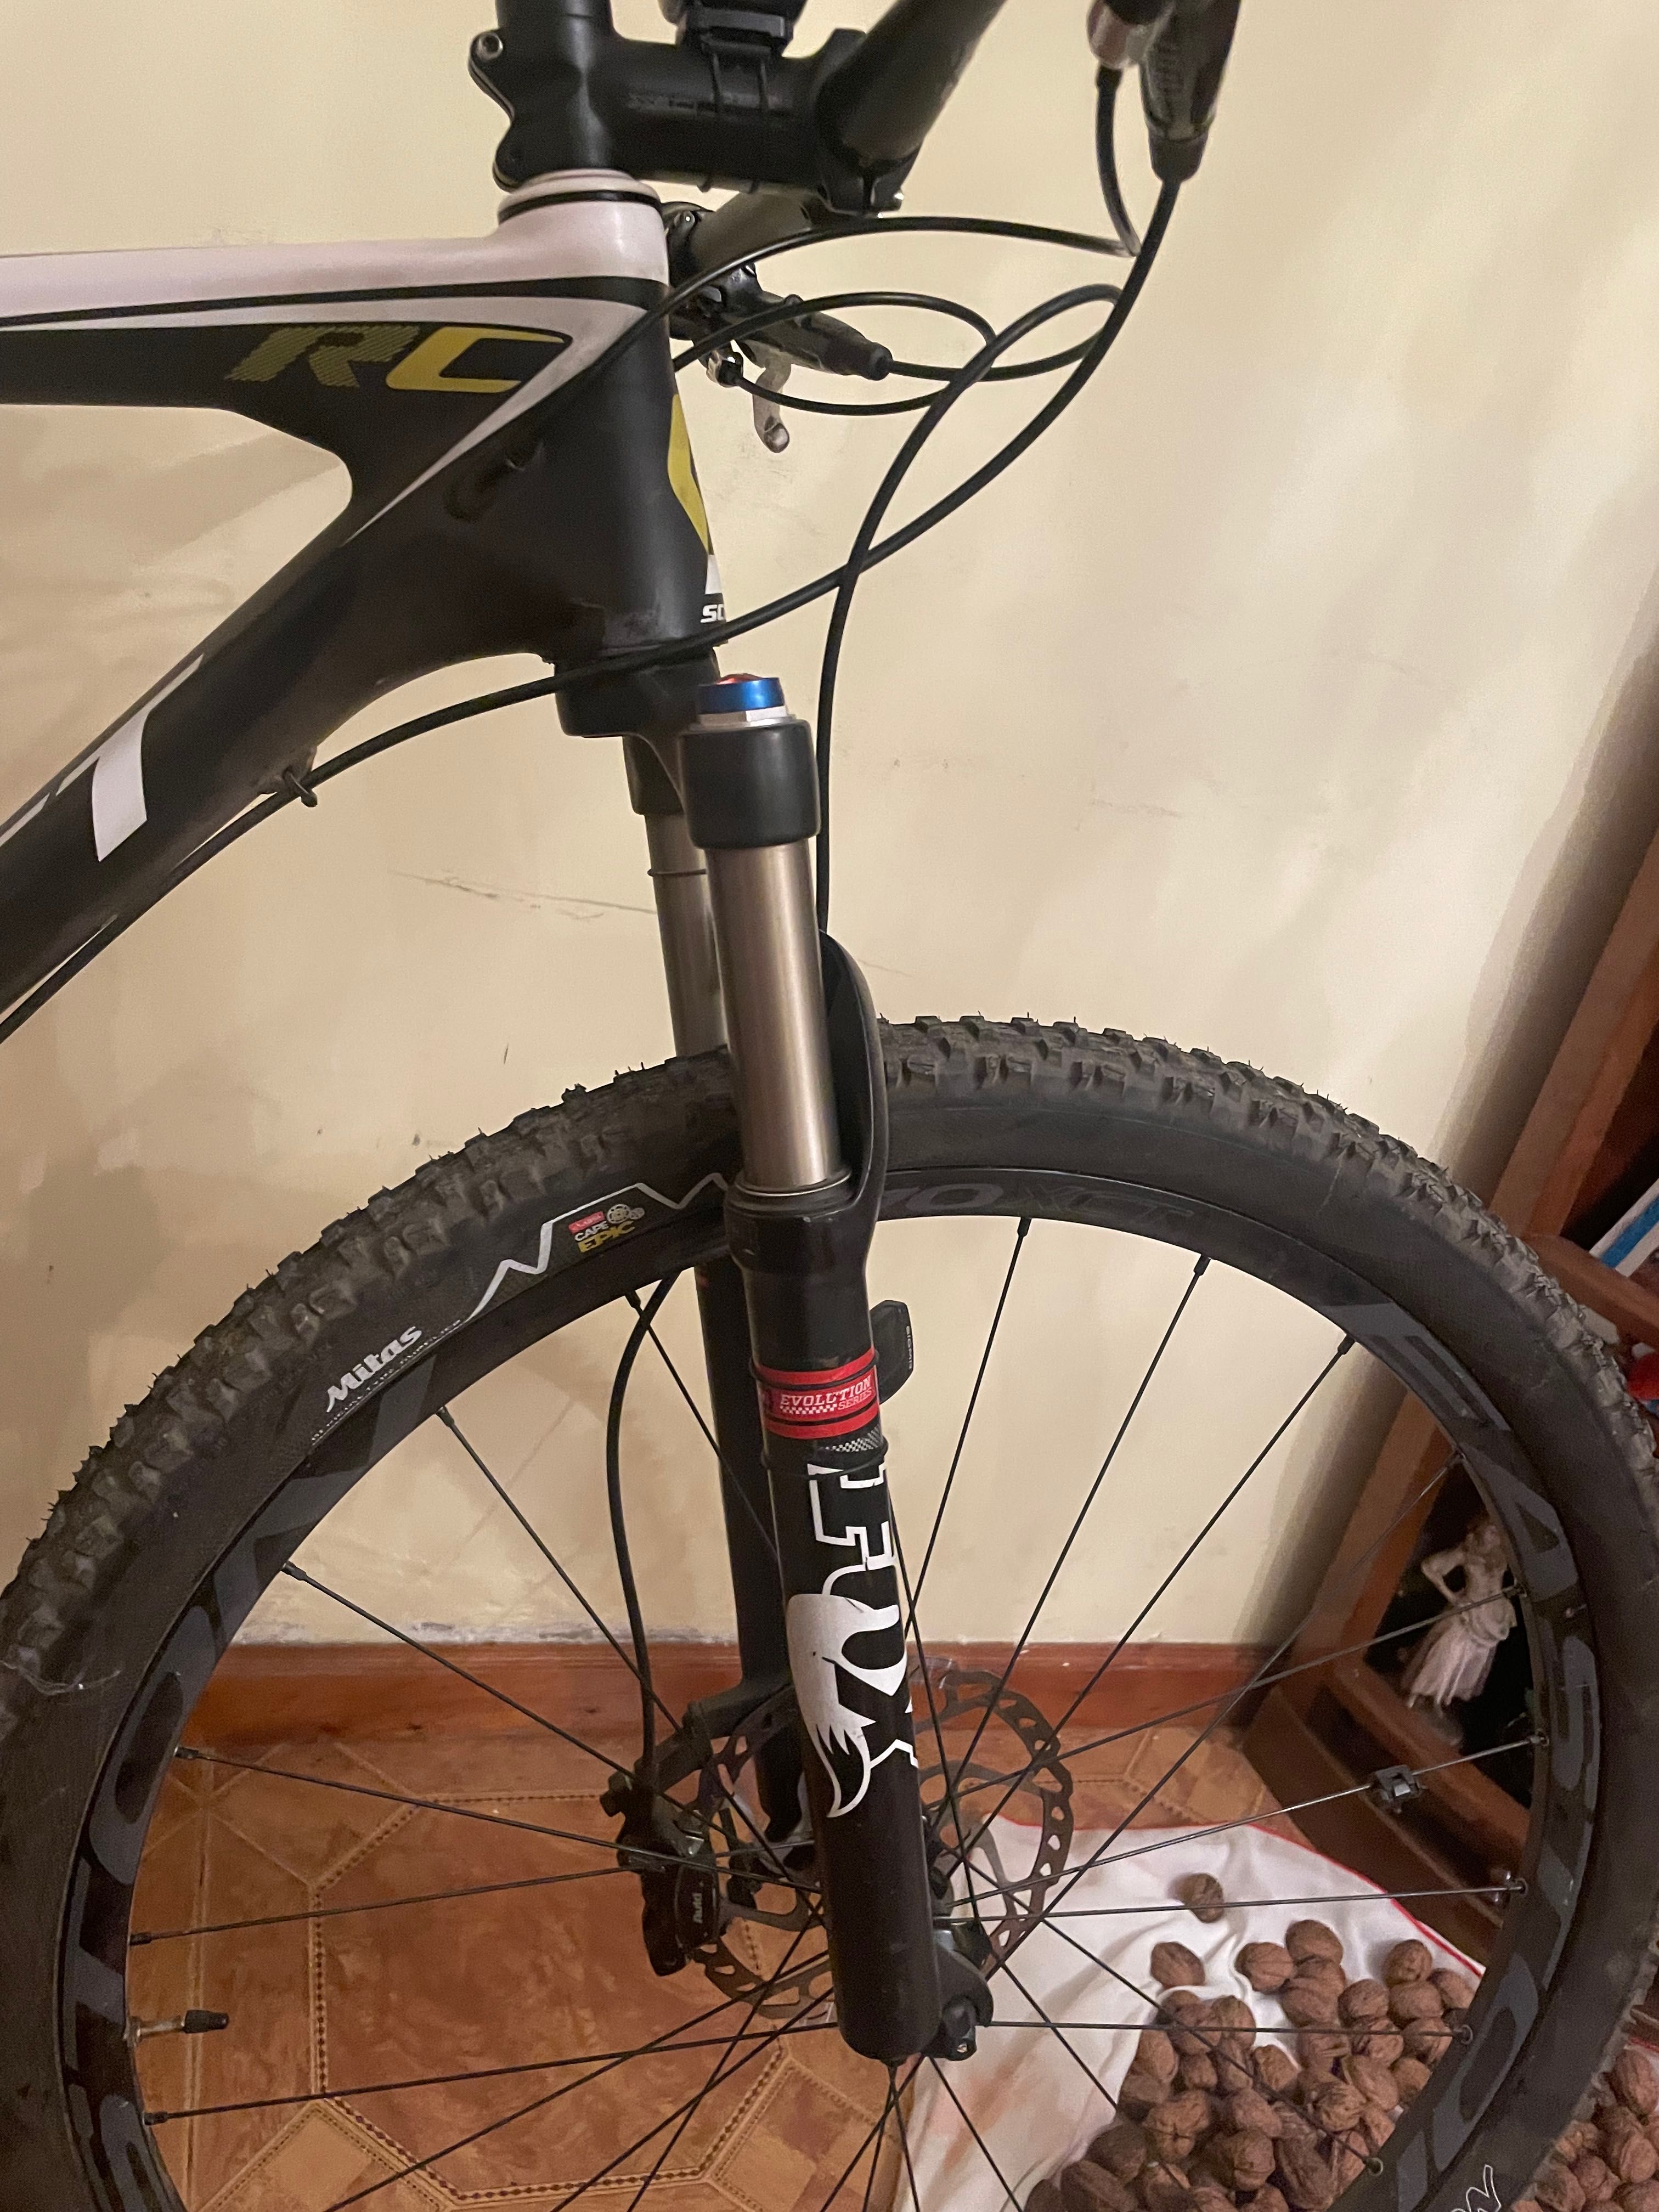 Bicicleta Scott Rc em carbono com suspensão fox e com conta km